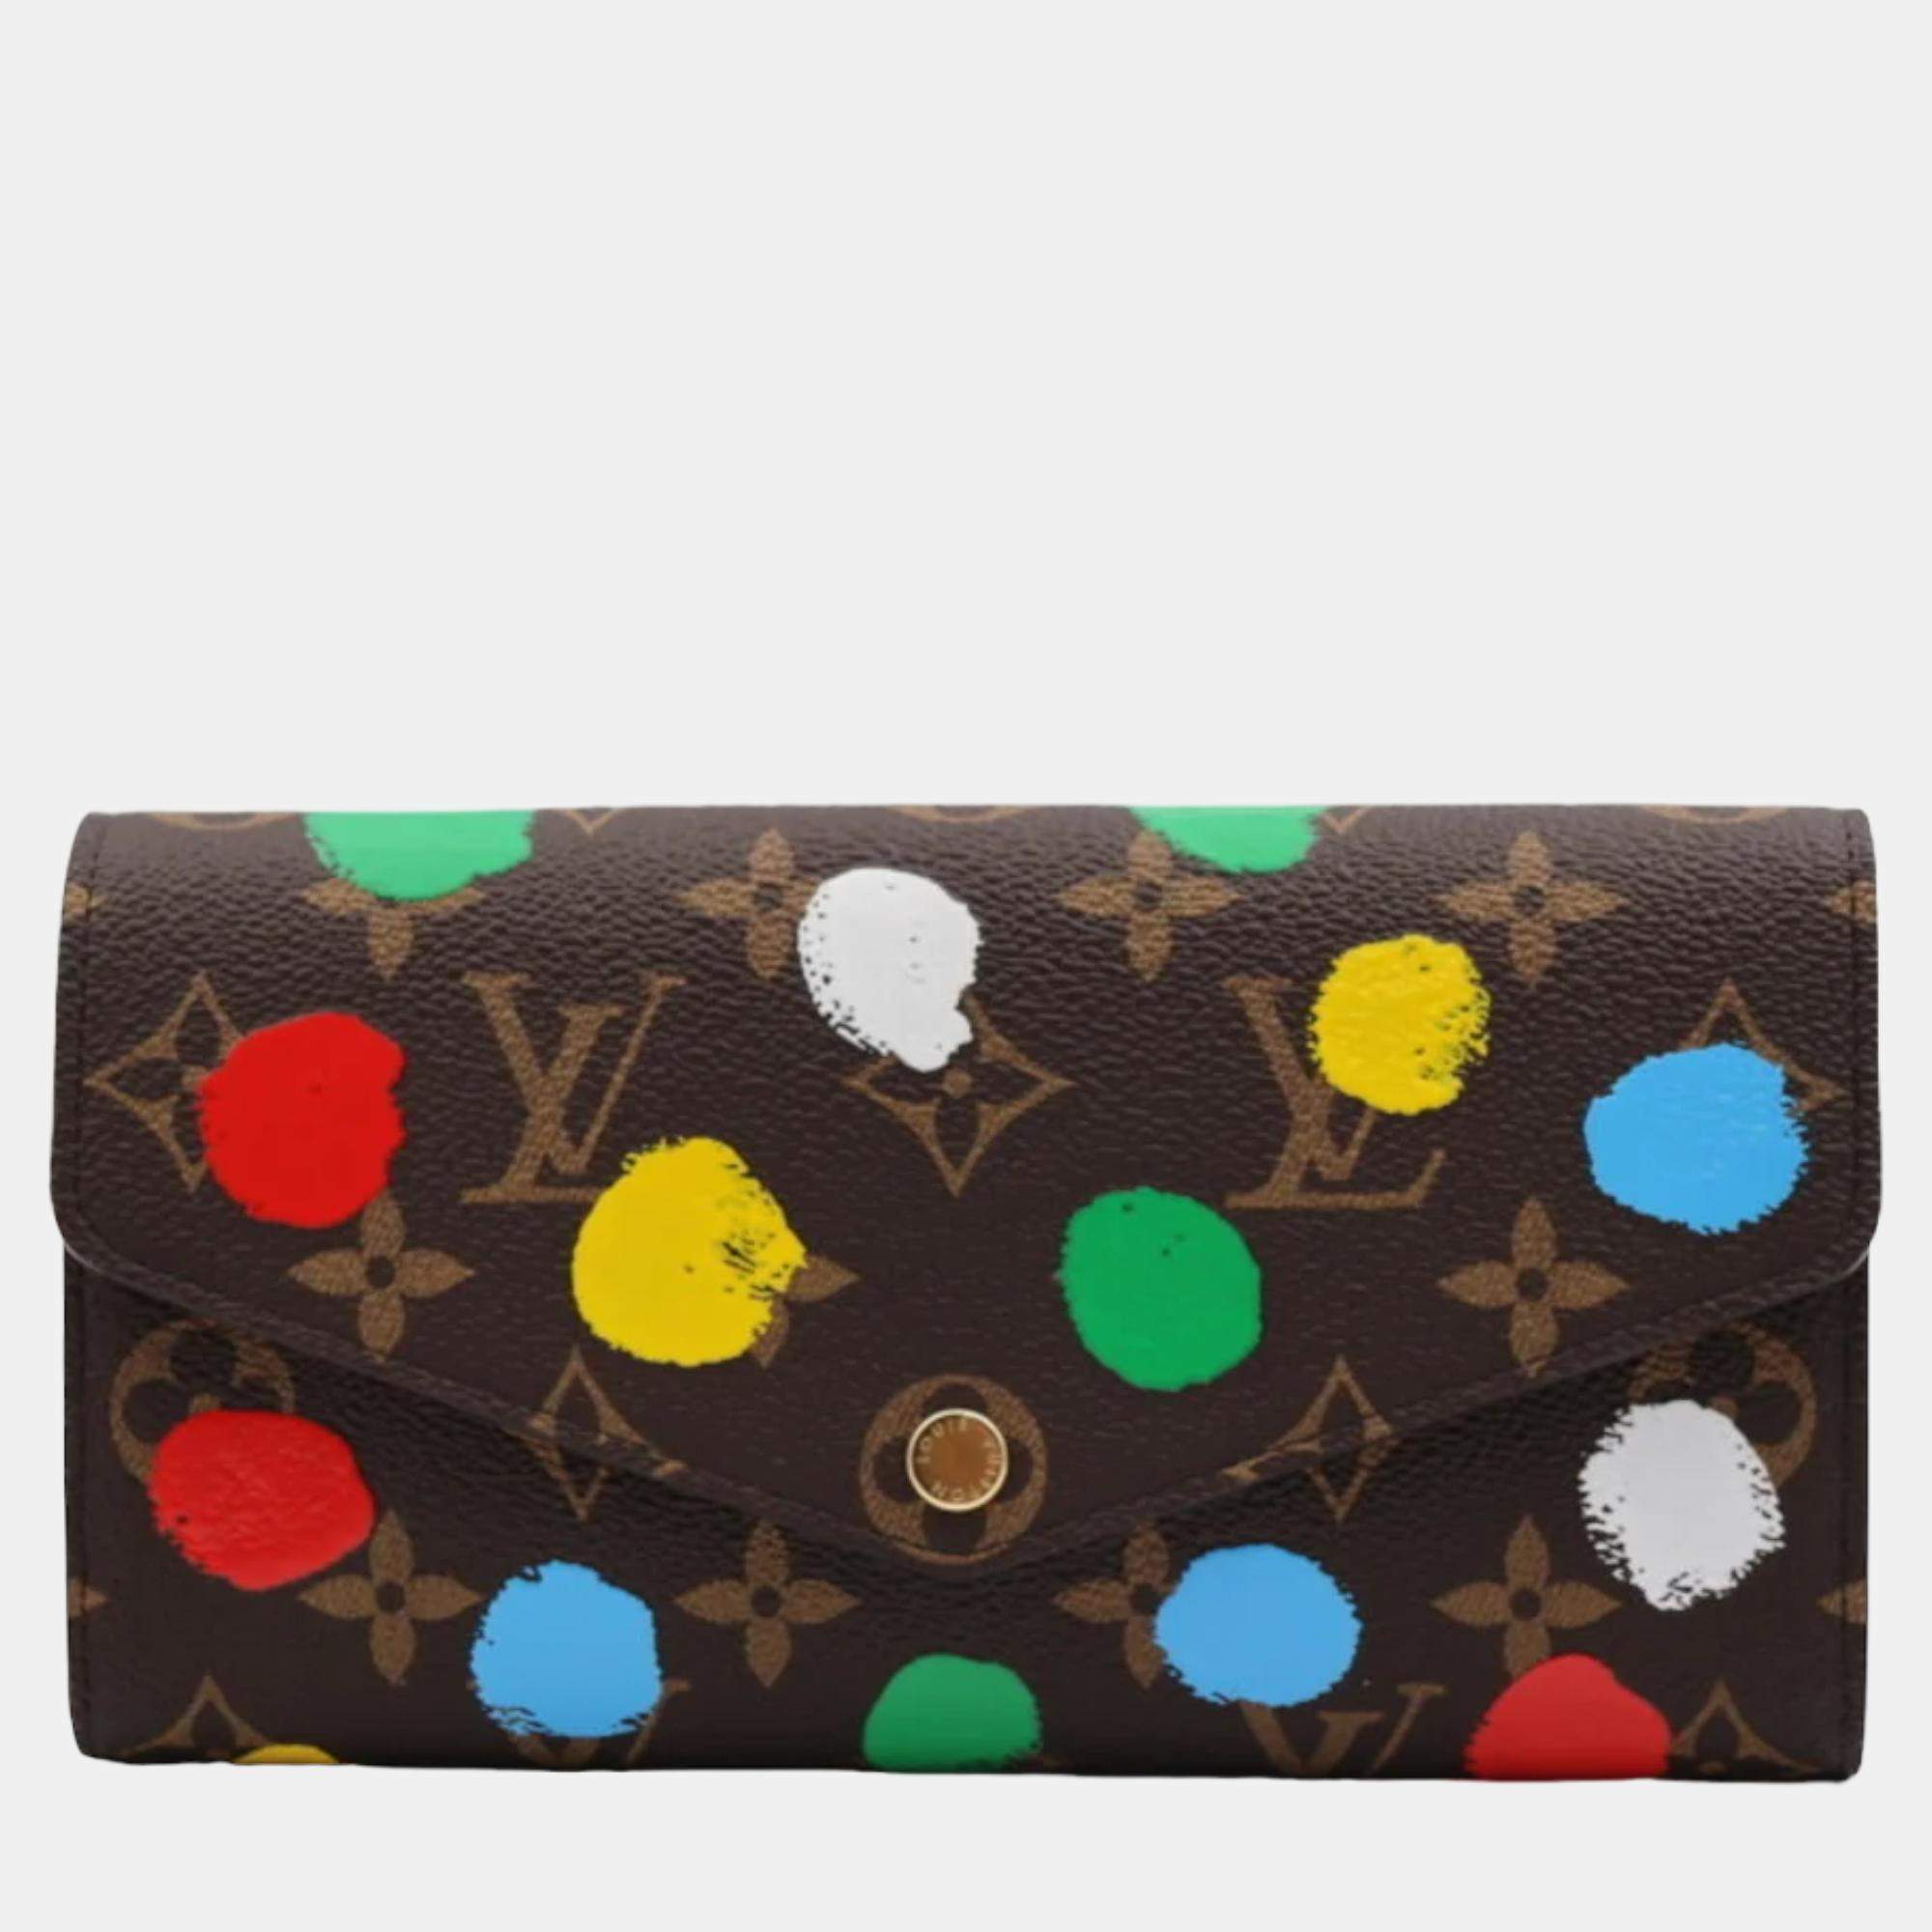 Louis Vuitton Canvas Exterior Polka Dot Bags & Handbags for Women